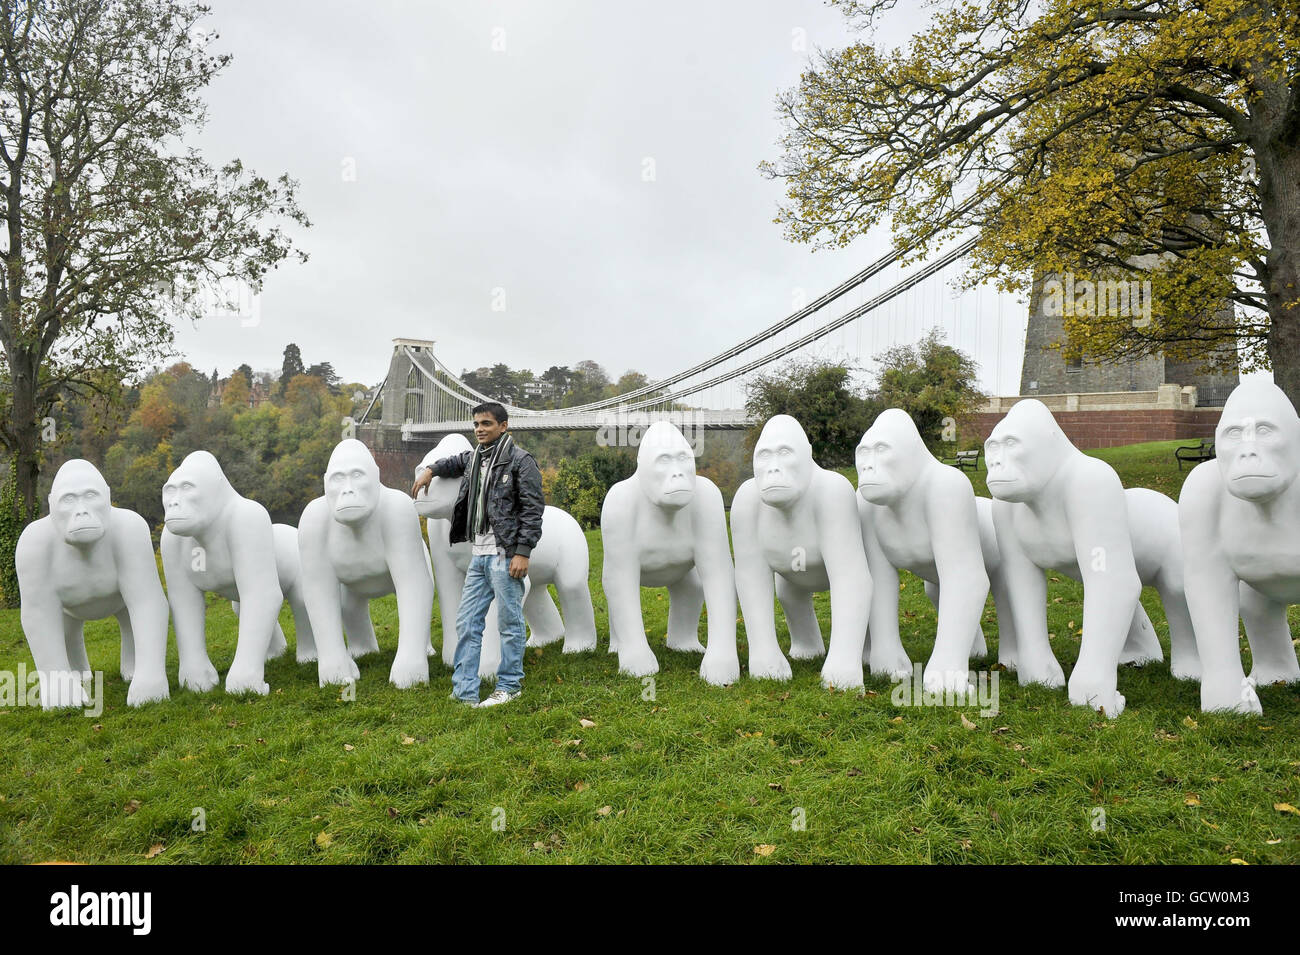 Un touriste chinois pose pour des photos à côté d'une série de sculptures de gorille grandeur nature à côté du pont suspendu de Clifton dans le cadre d'un grand événement d'art public pour célébrer le 175e anniversaire du zoo de Bristol. Banque D'Images